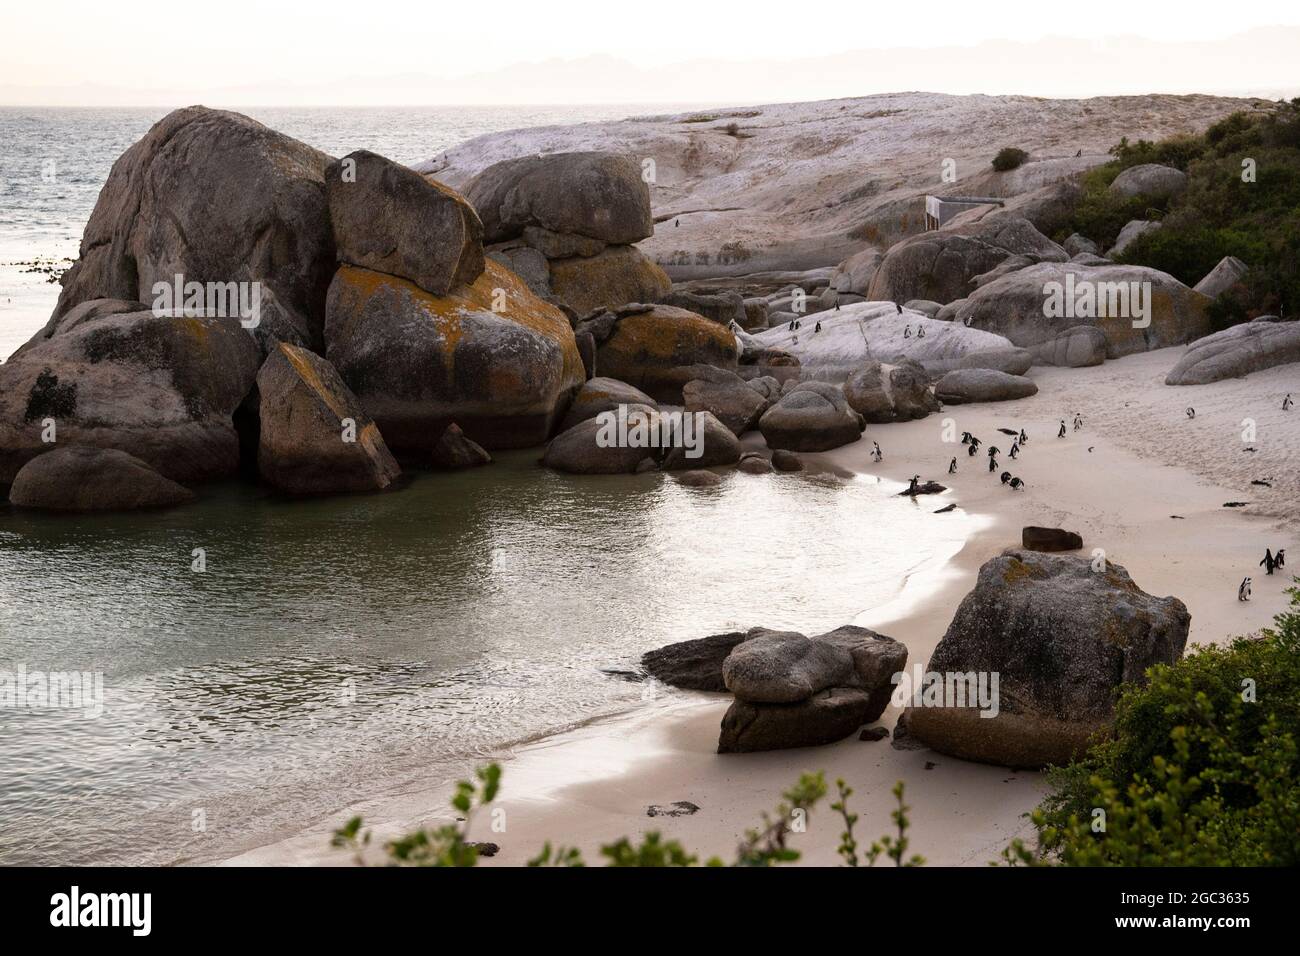 La plage de Boulders, péninsule du Cap, Afrique du Sud Banque D'Images